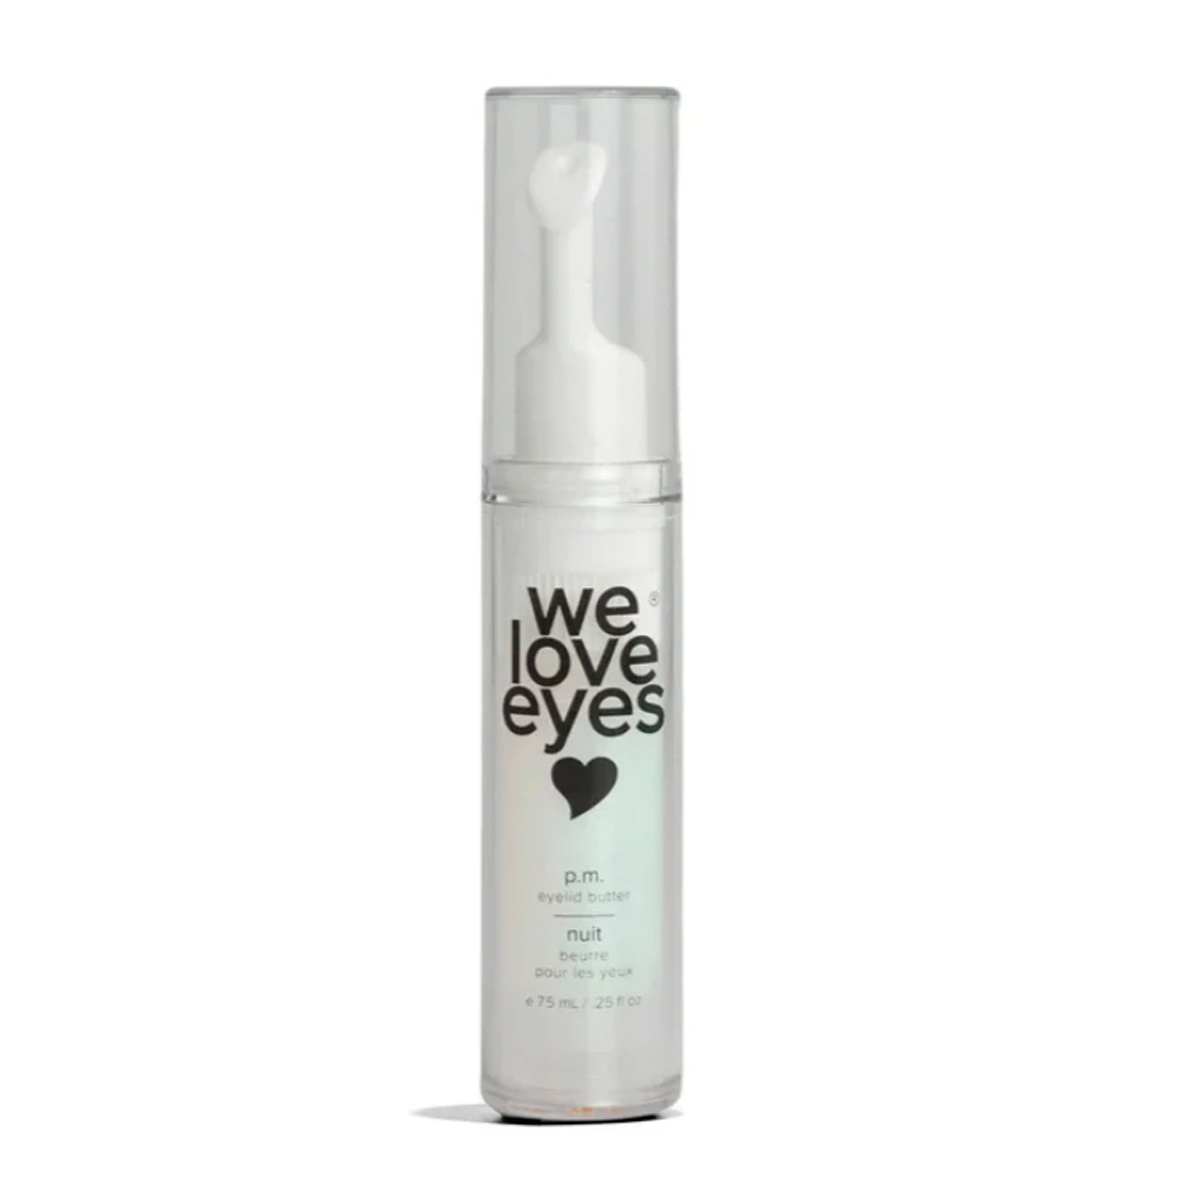 We Love Eyes - P.M. Eyelid Gel - All Natural Nighttime Eyelid Relief